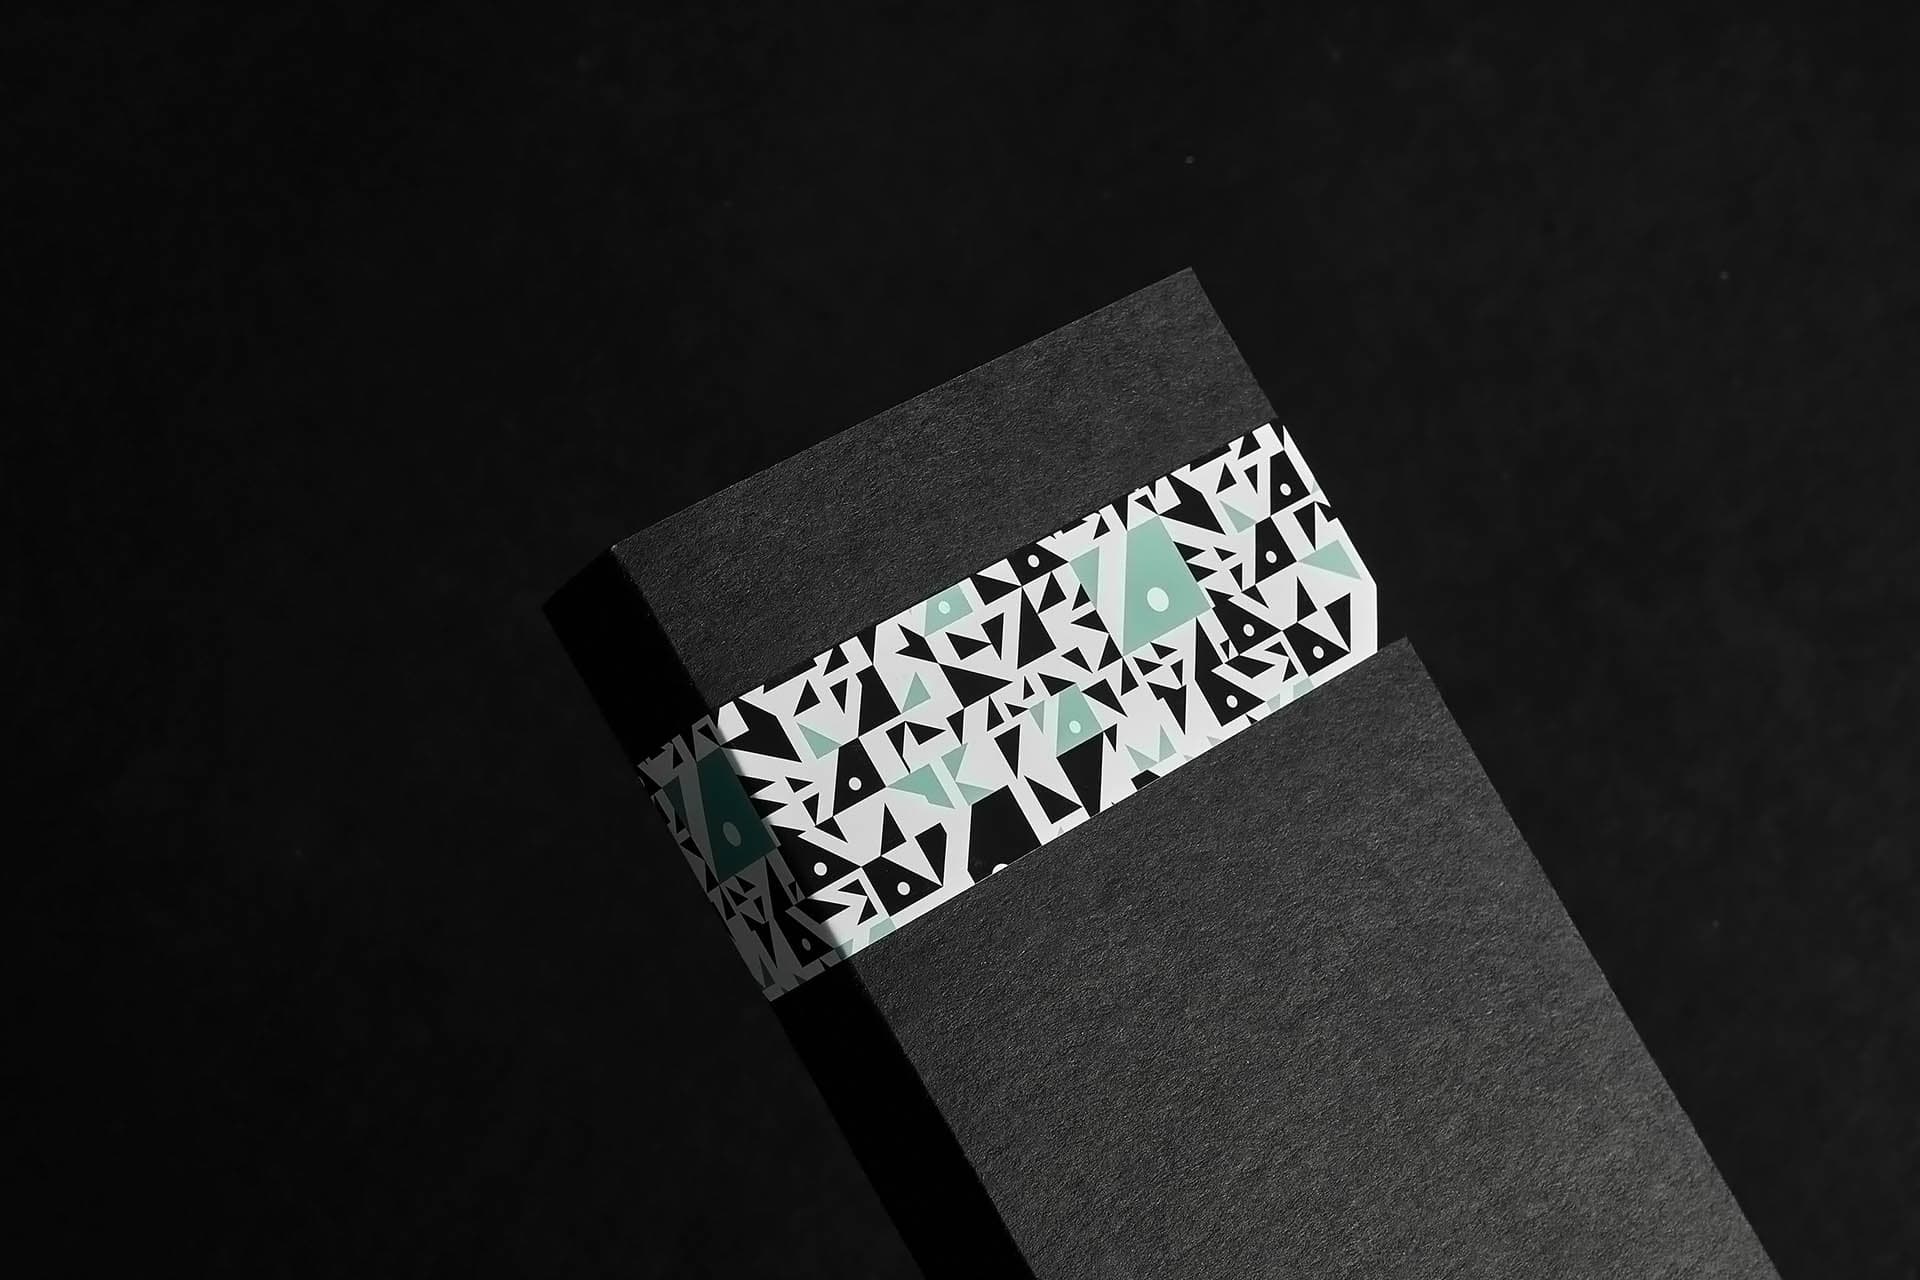 Diseño de identidad visual y packaging para marca de anchoas artesanales